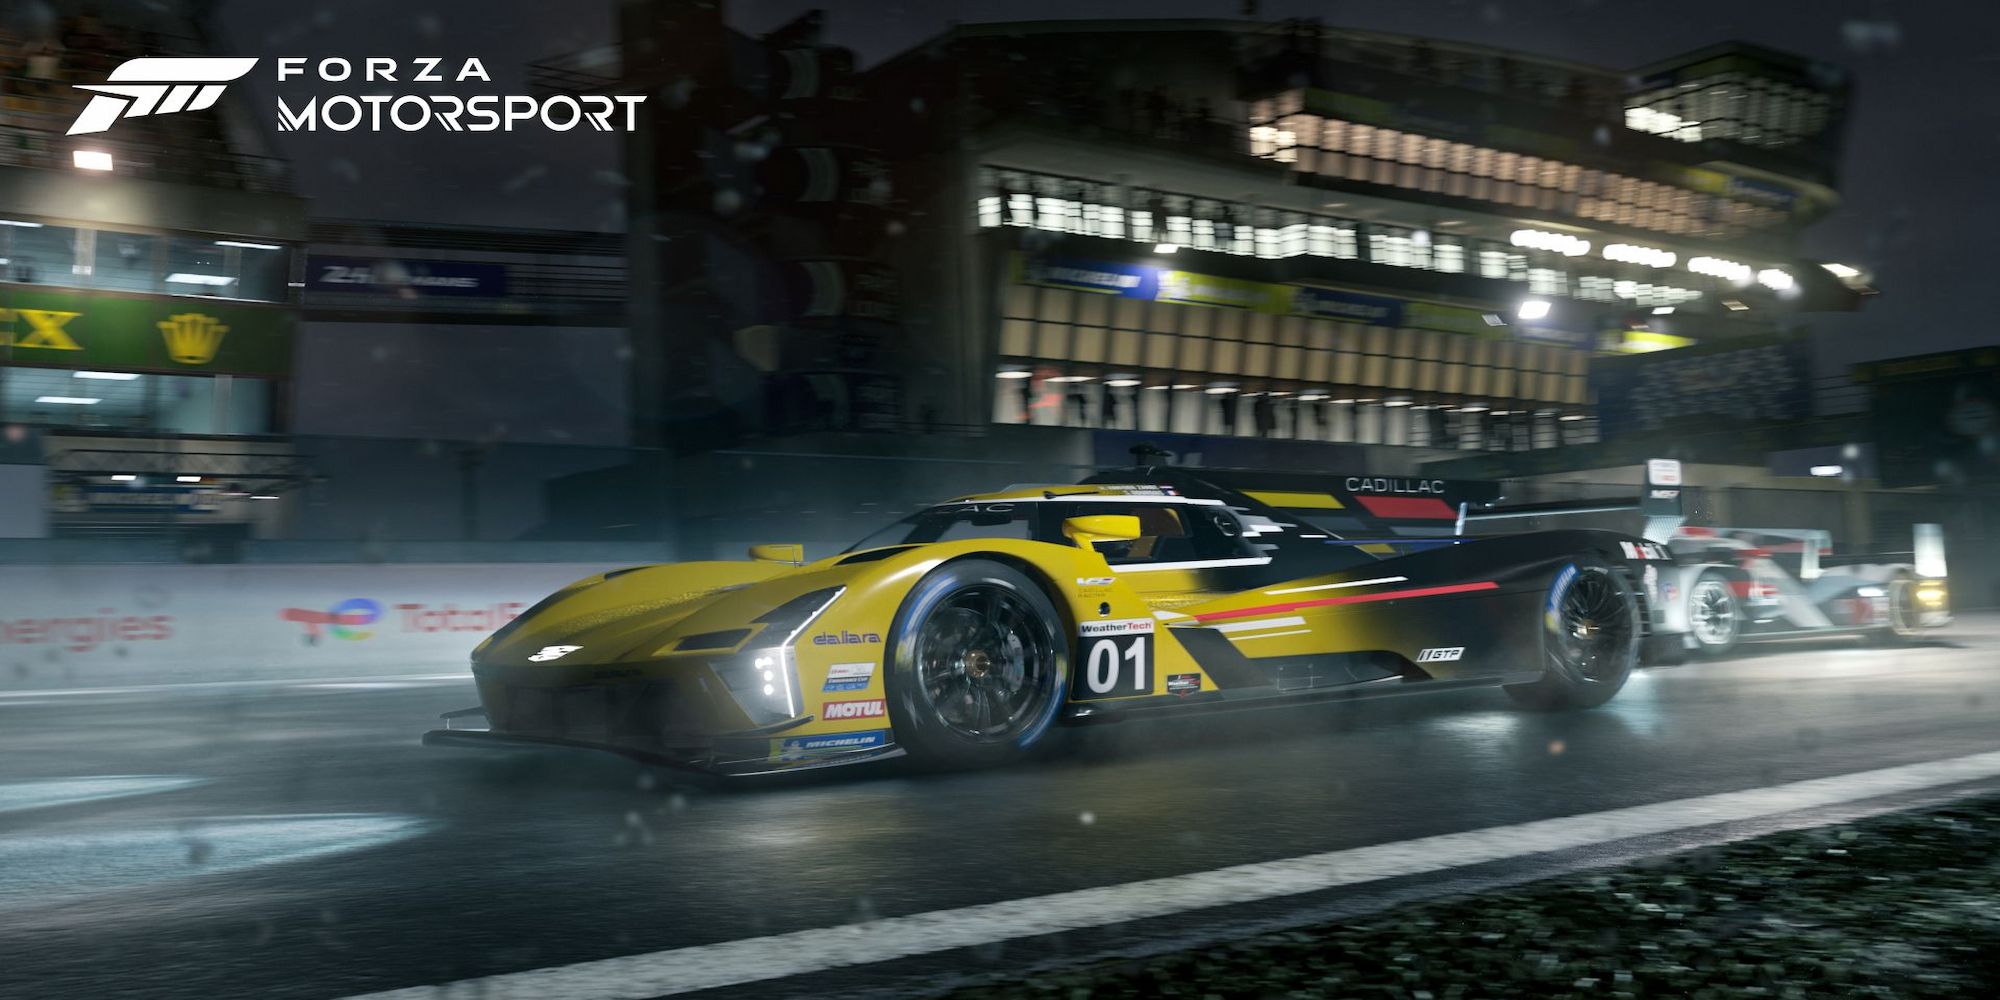 Far guidare automaticamente la tua auto in modalità Gioco libero è il modo più veloce per guadagnare punti auto in Forza Motorsport 8.